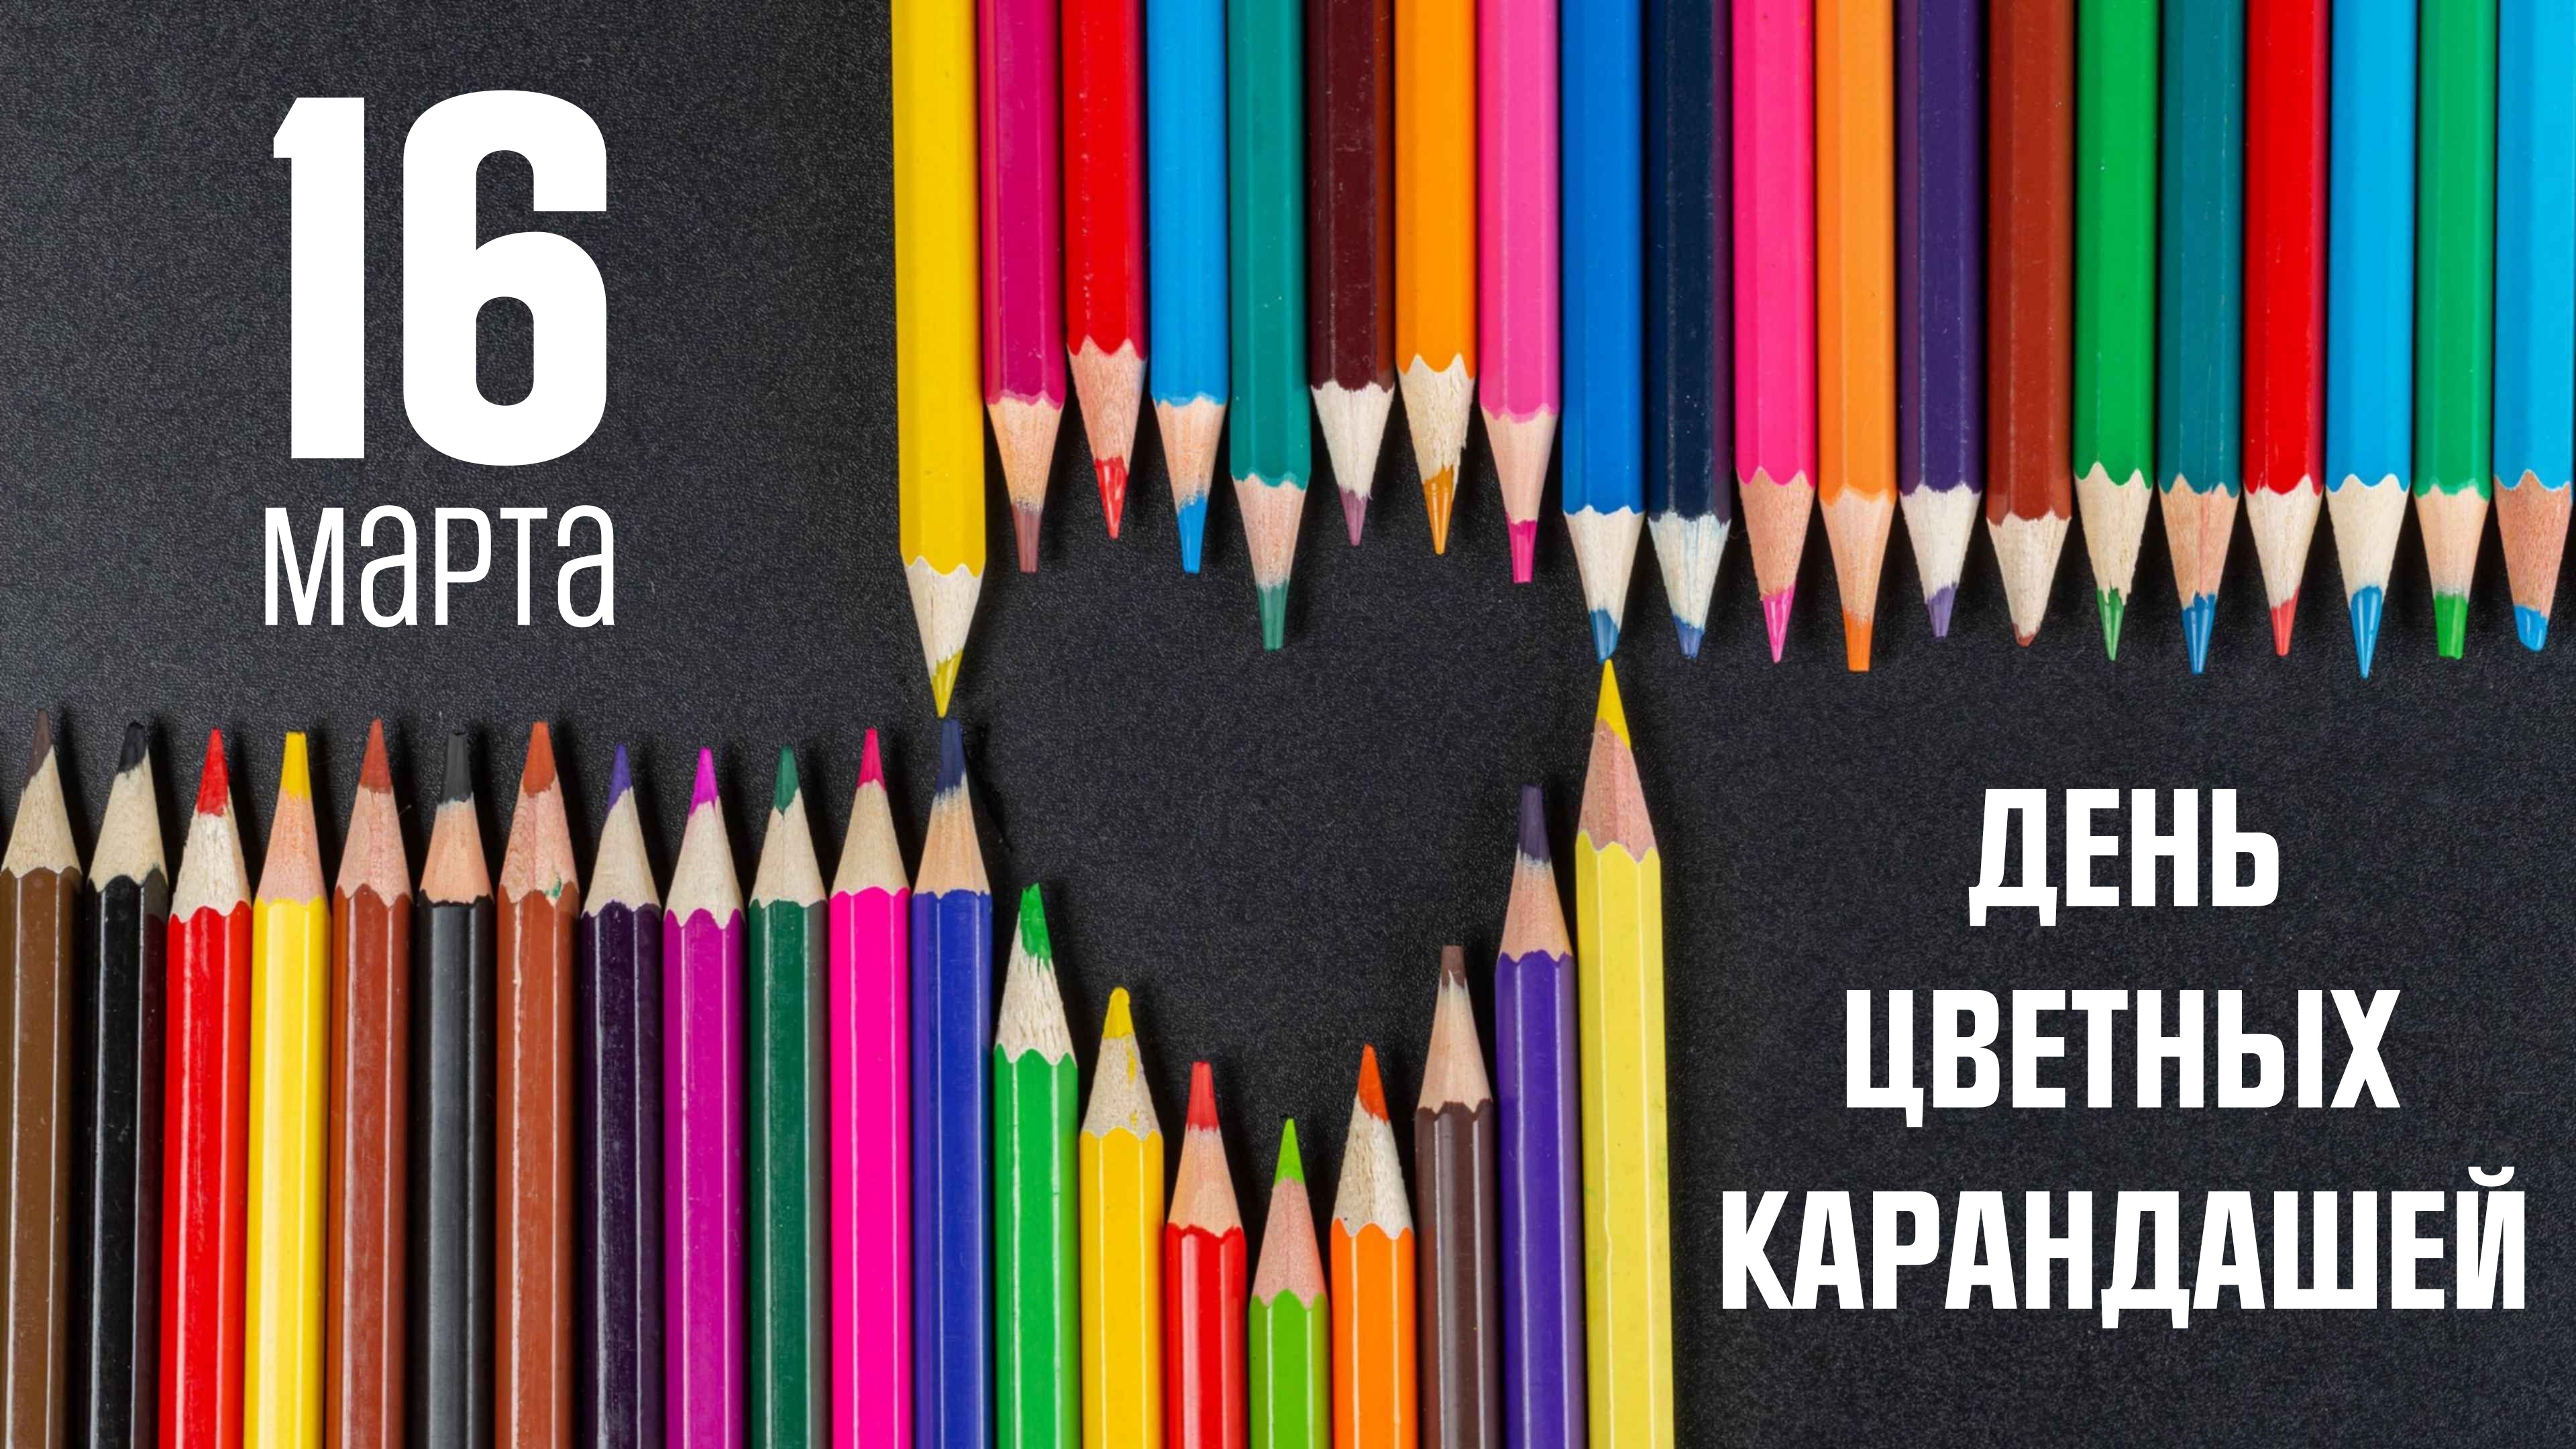 День цветных карандашей. Праздник цветных карандашей. День цветных карандашей картинки. Девять карандашей